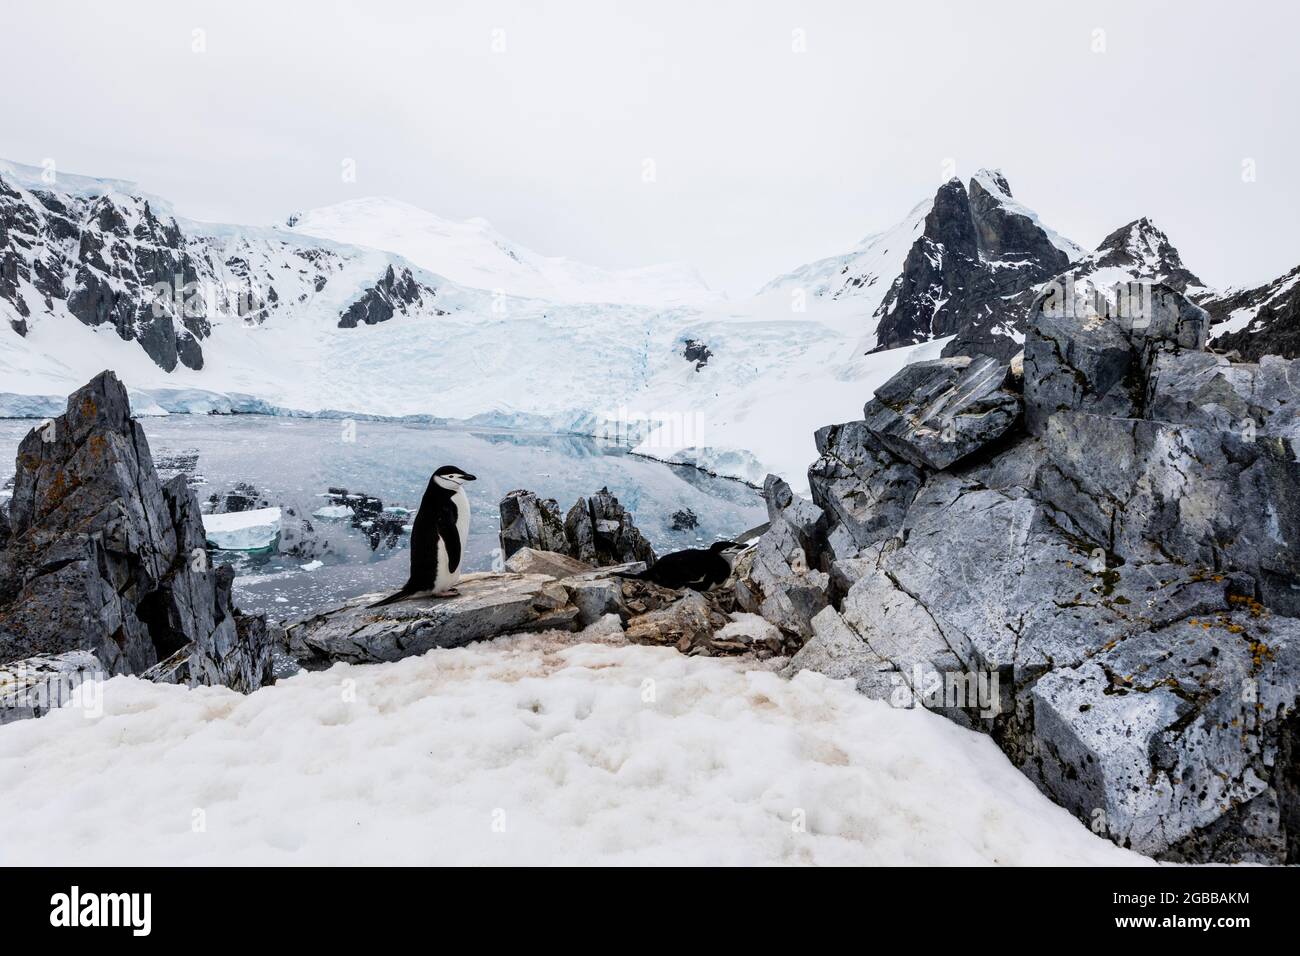 Pinguino Chinstrap (Pigoscelis antarcticus), sito di nidificazione in alto sulla collina nel porto di Orne, Antartide, regioni polari Foto Stock